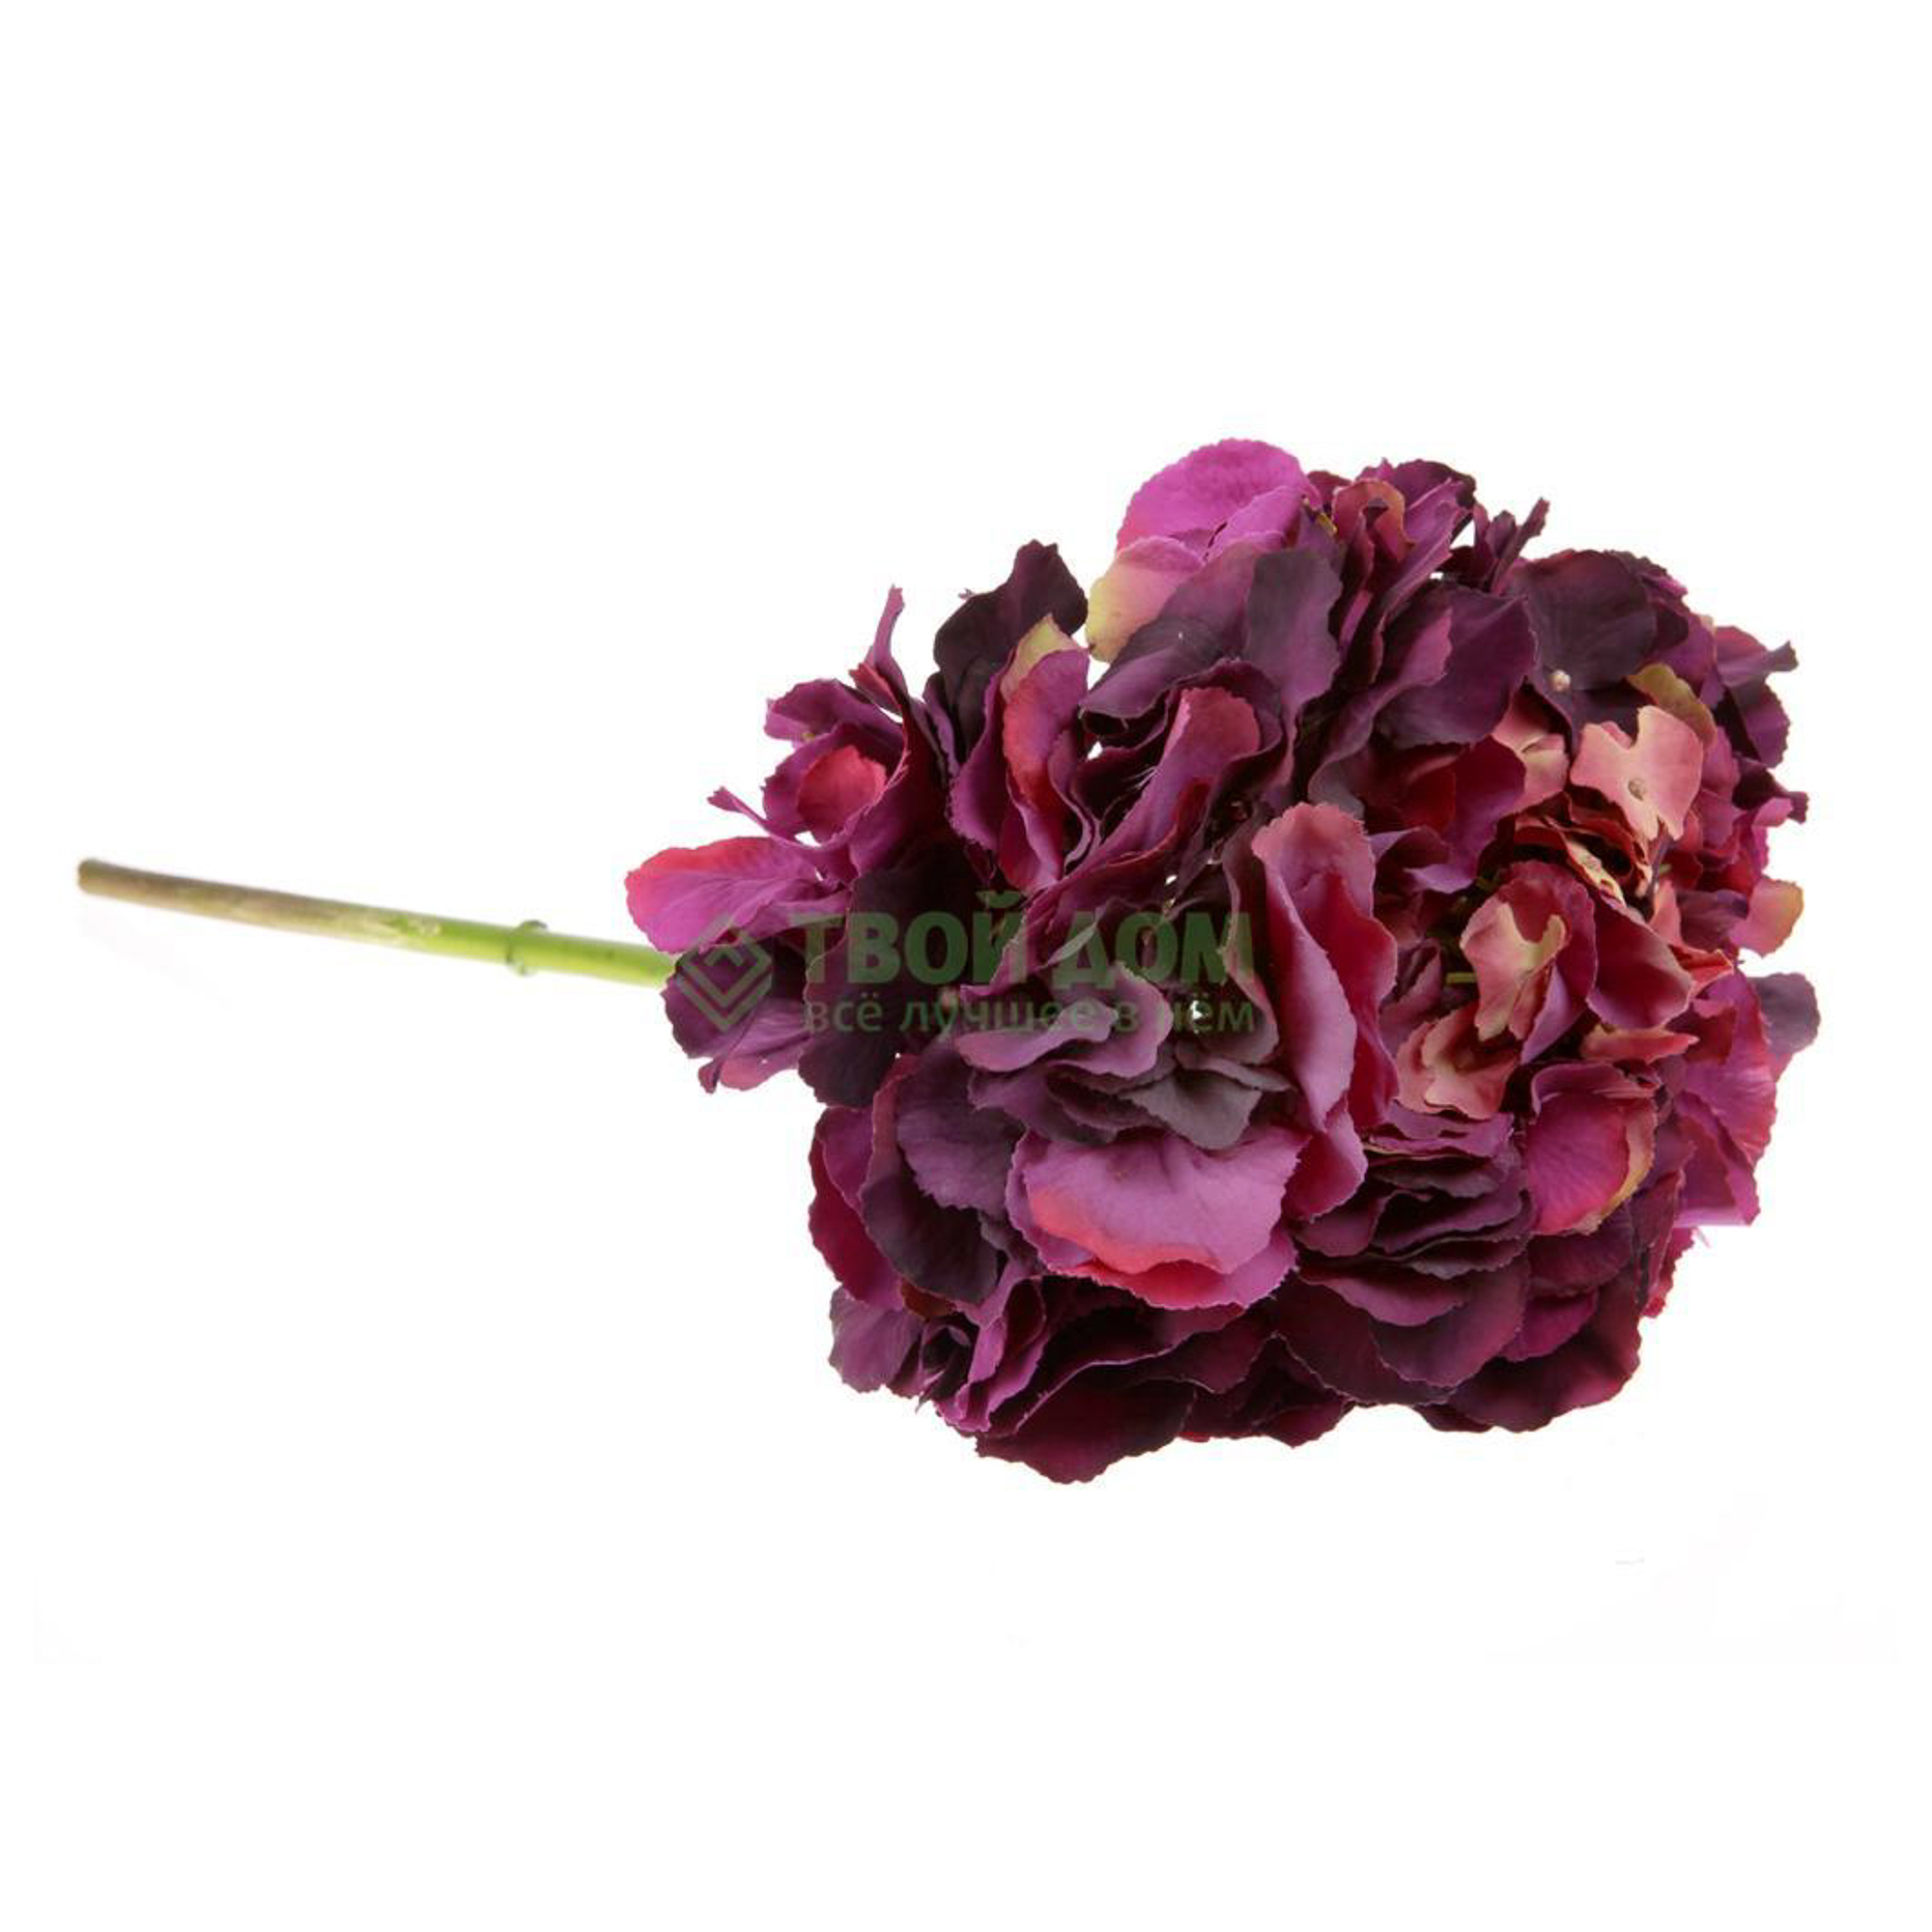 фото Litao цветок иск гортензия сирен-фиолет 52см (h4881 pur)